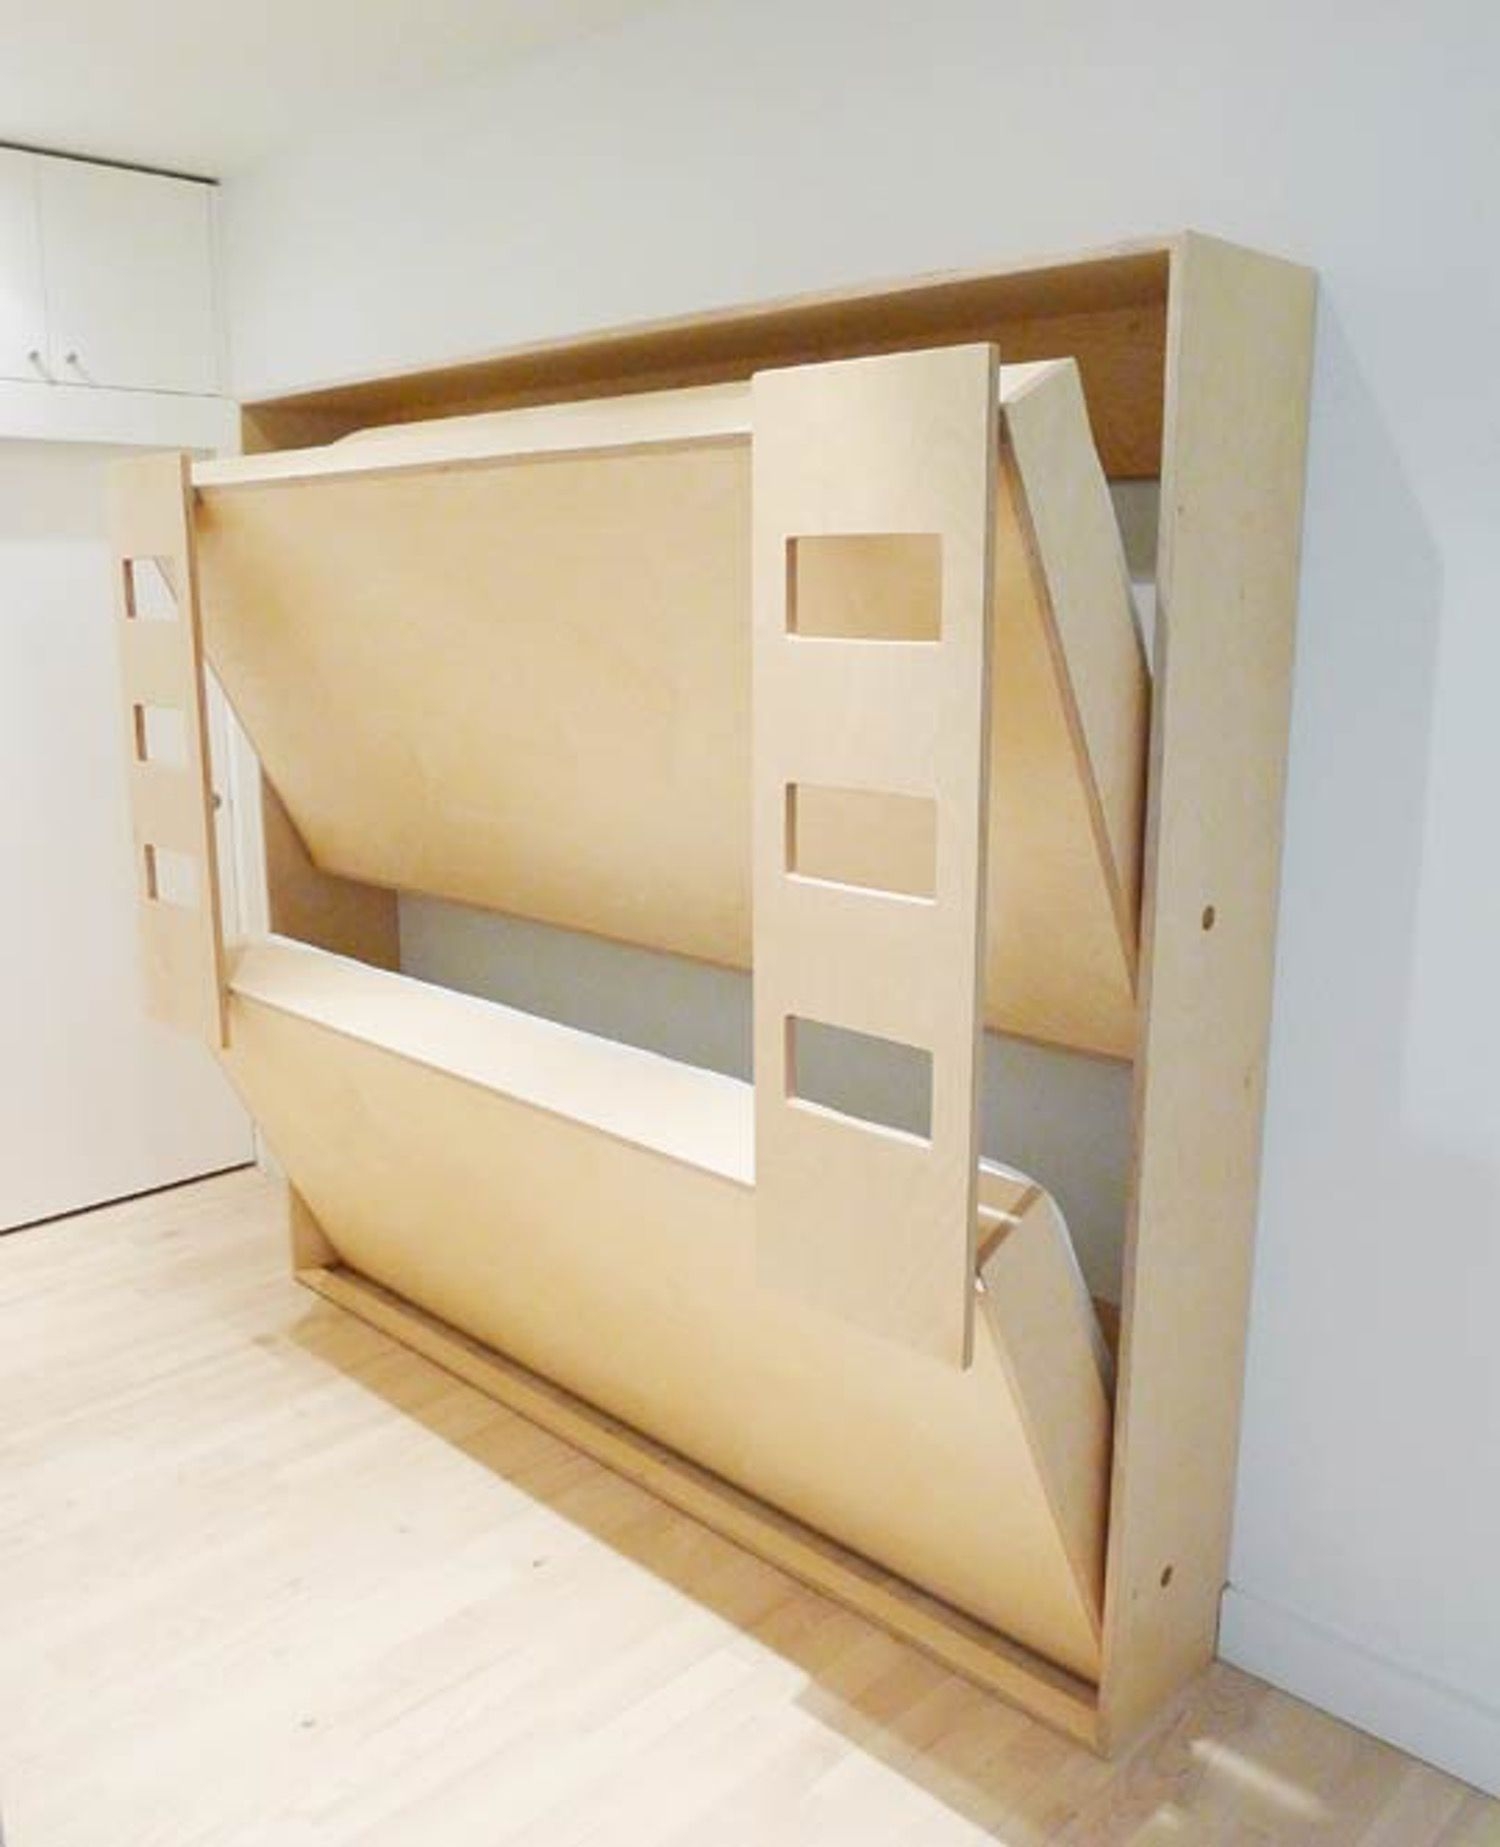 bunk beds space saving